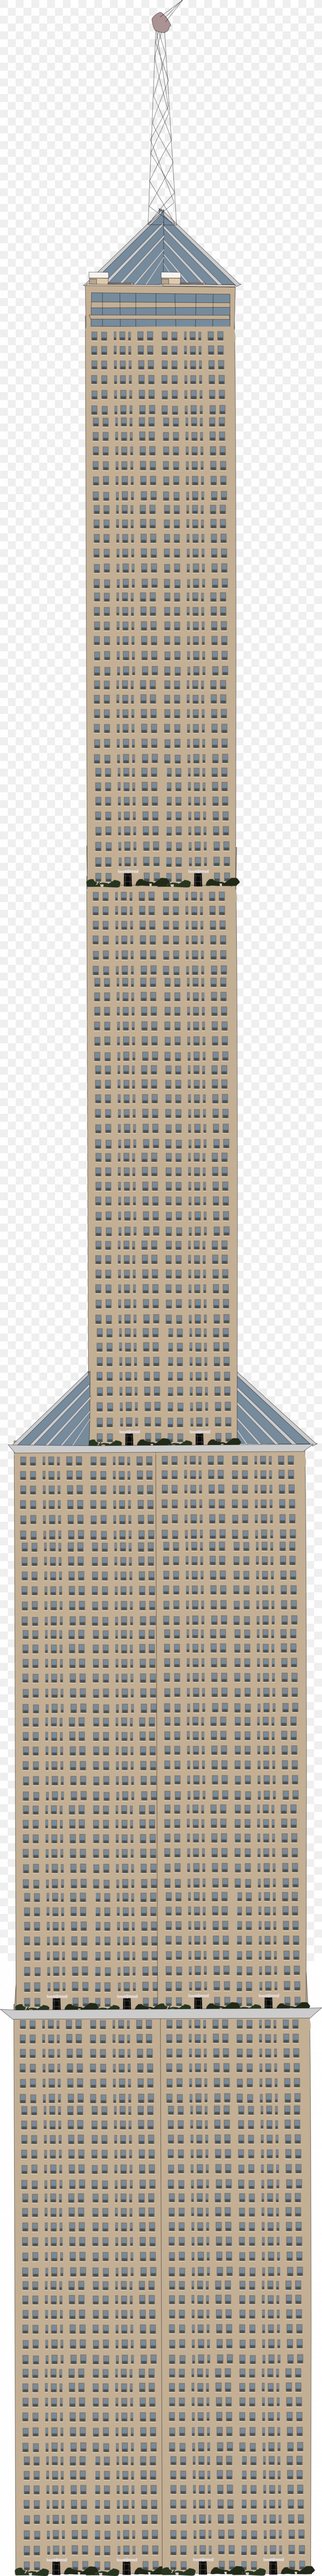 Building Skyscraper Facade, PNG, 1024x8203px, Building, Facade, Skyscraper, Tower Download Free